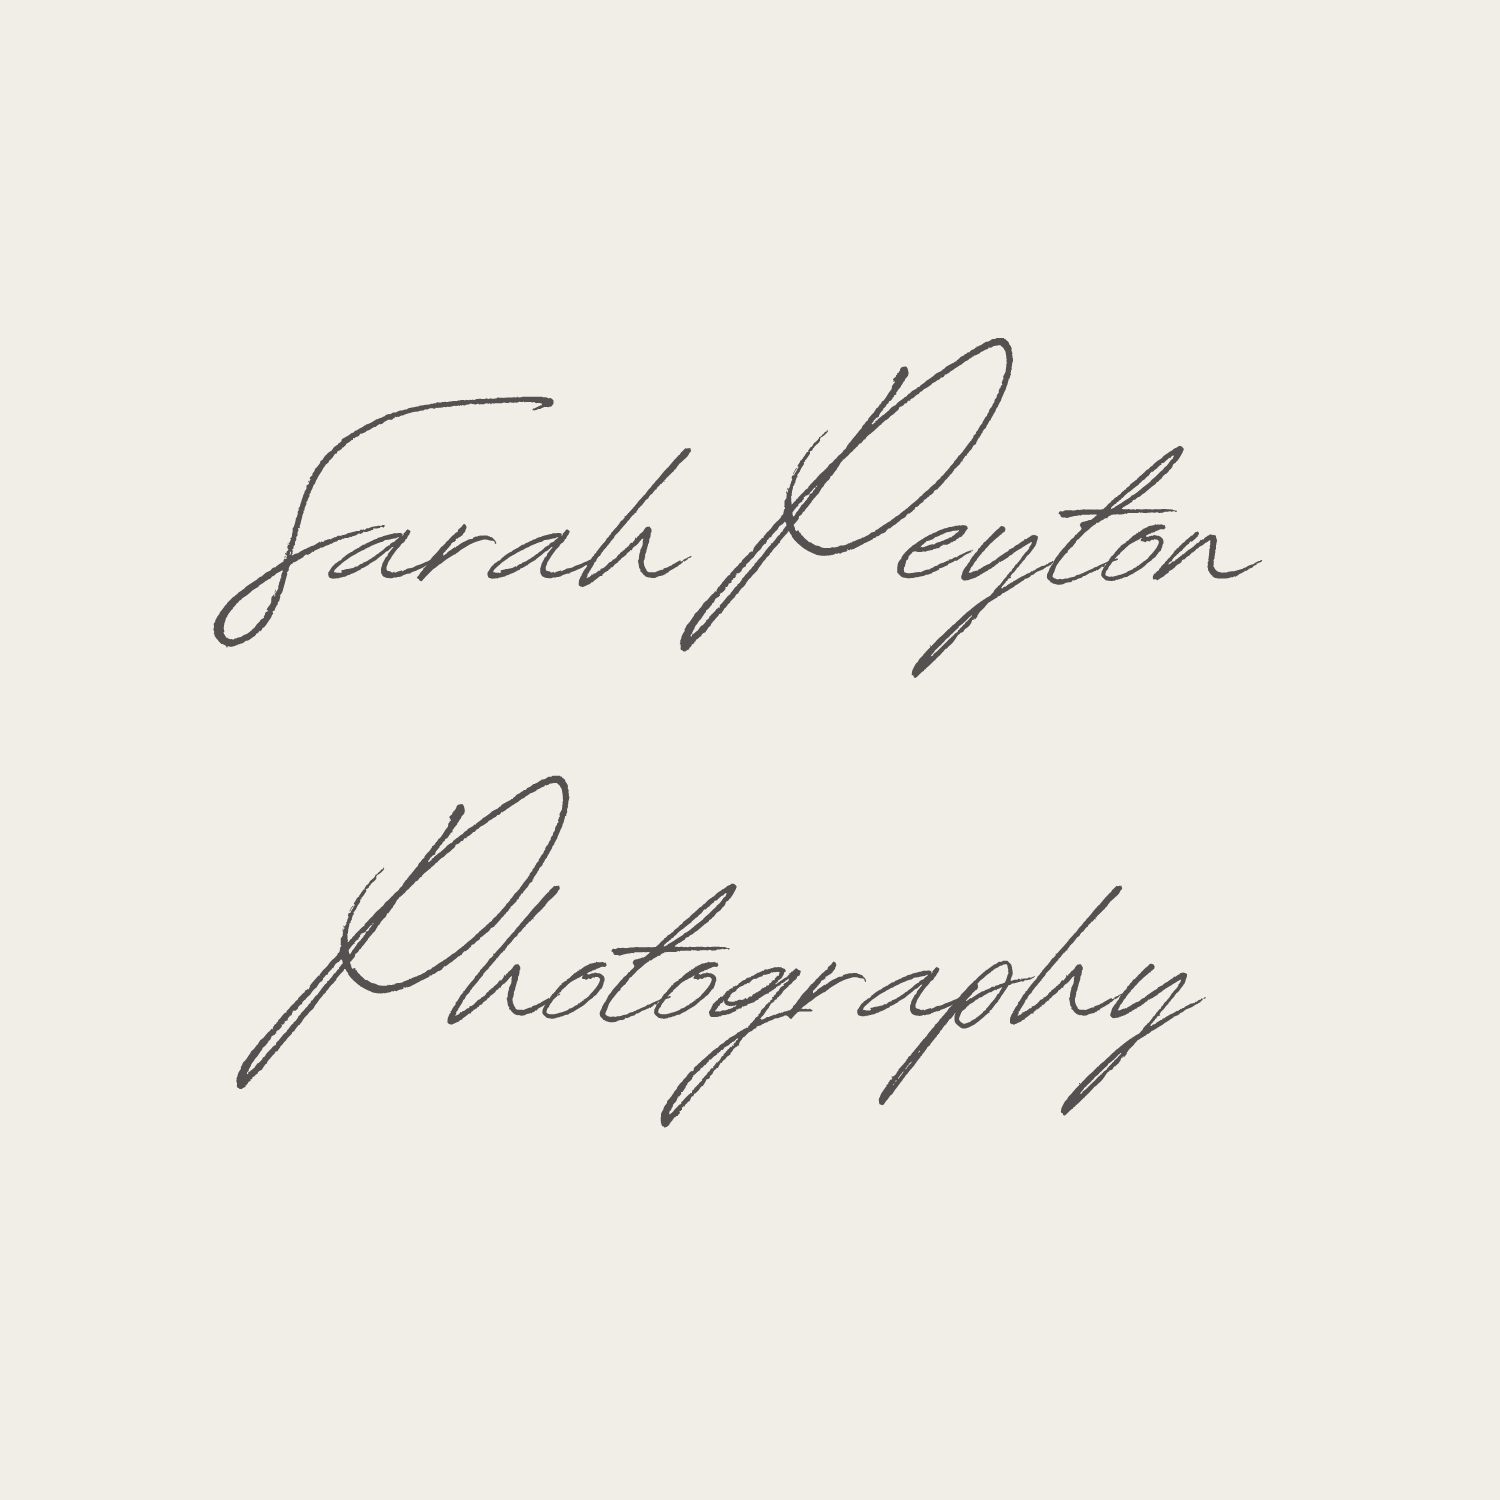 Sarah Peyton Photography